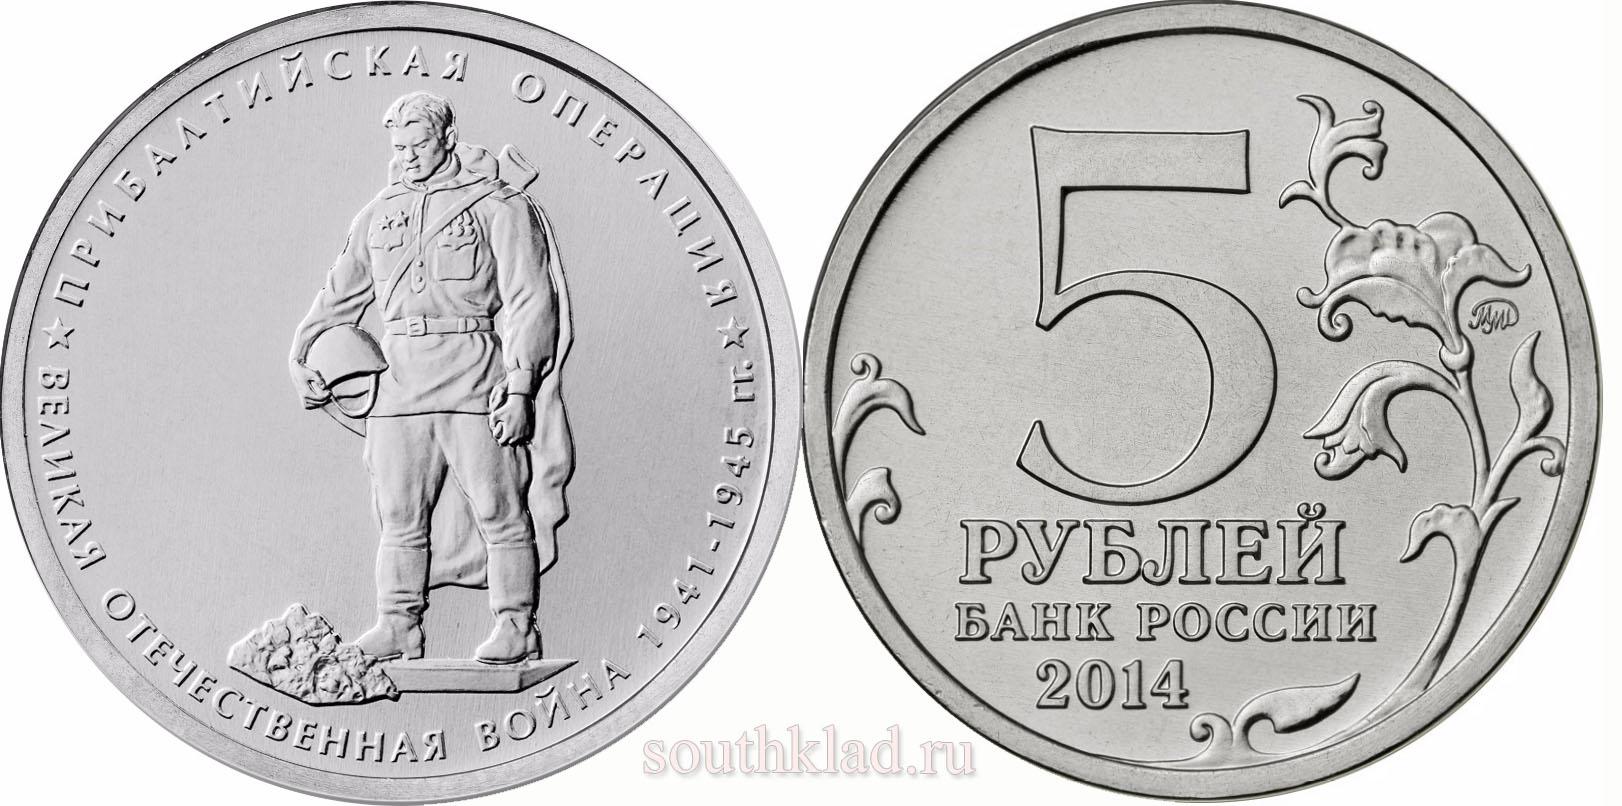 5 рублей 2014 года "Прибалтийская операция"